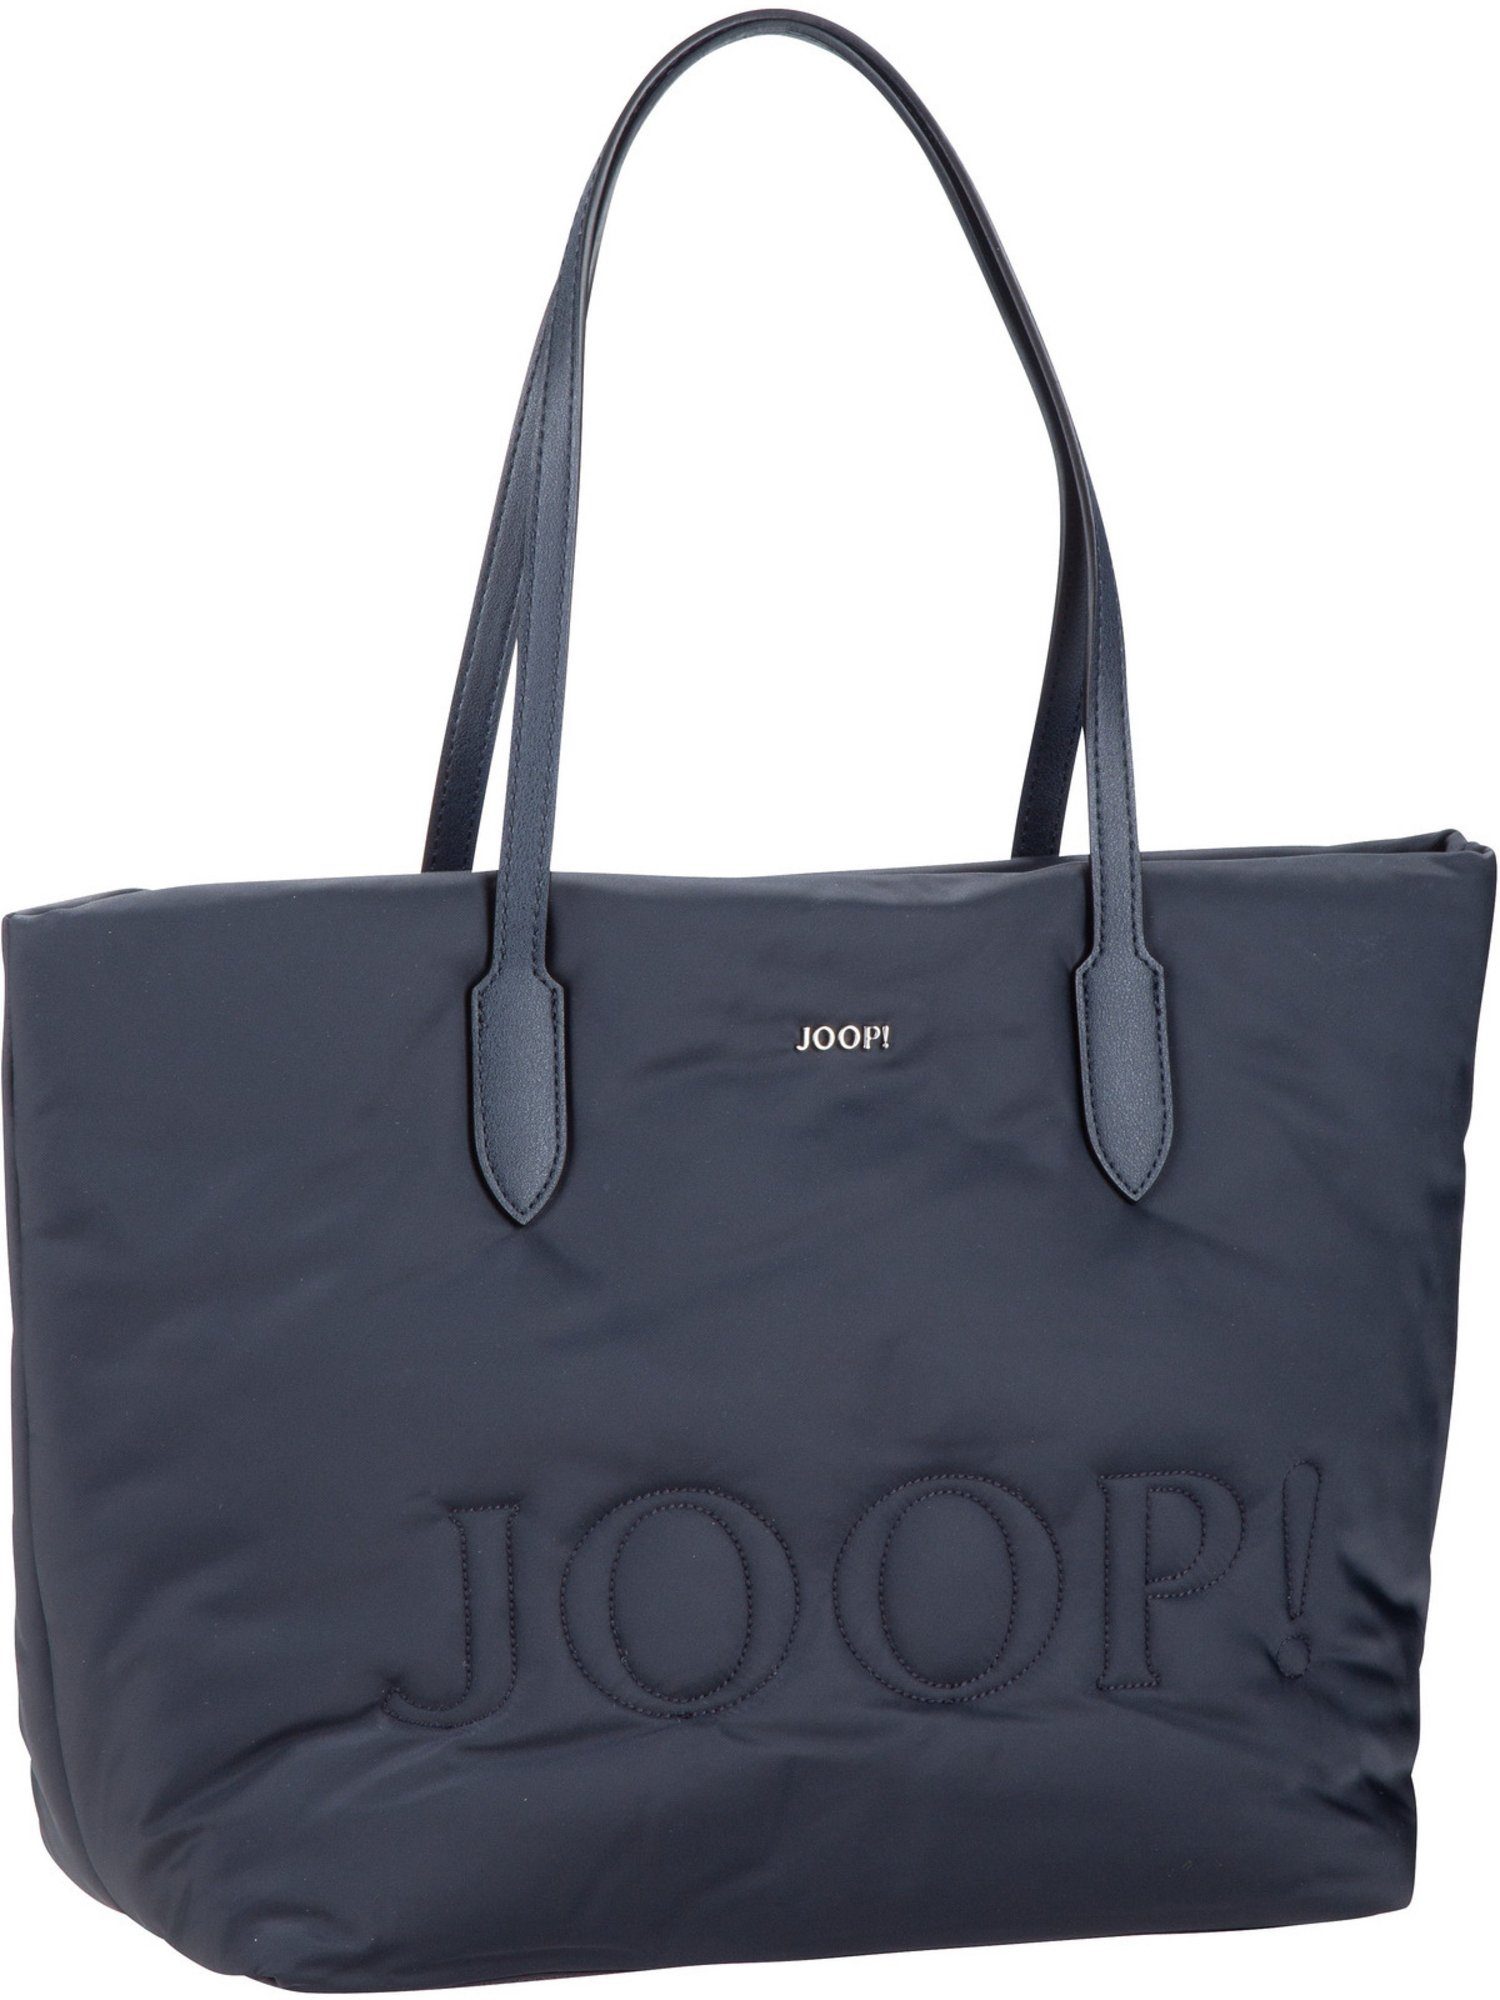 Joop! Handtasche »Tessuto Inverno Lara Shopper LHZ«, Shopper online kaufen  | OTTO